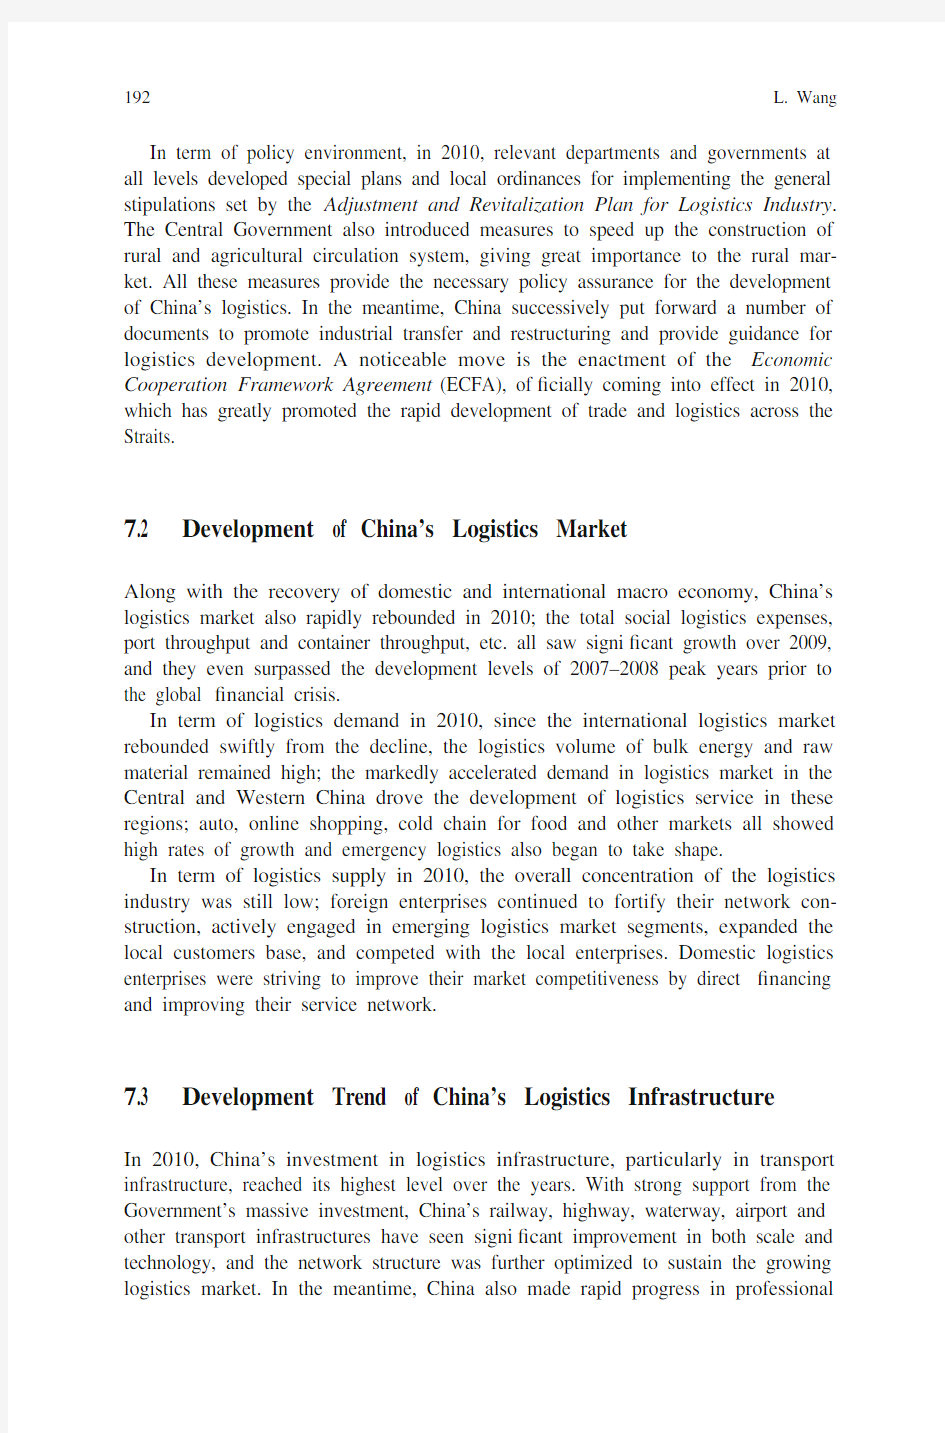 中国物流发展报告-蓝皮书 英文版 第七章